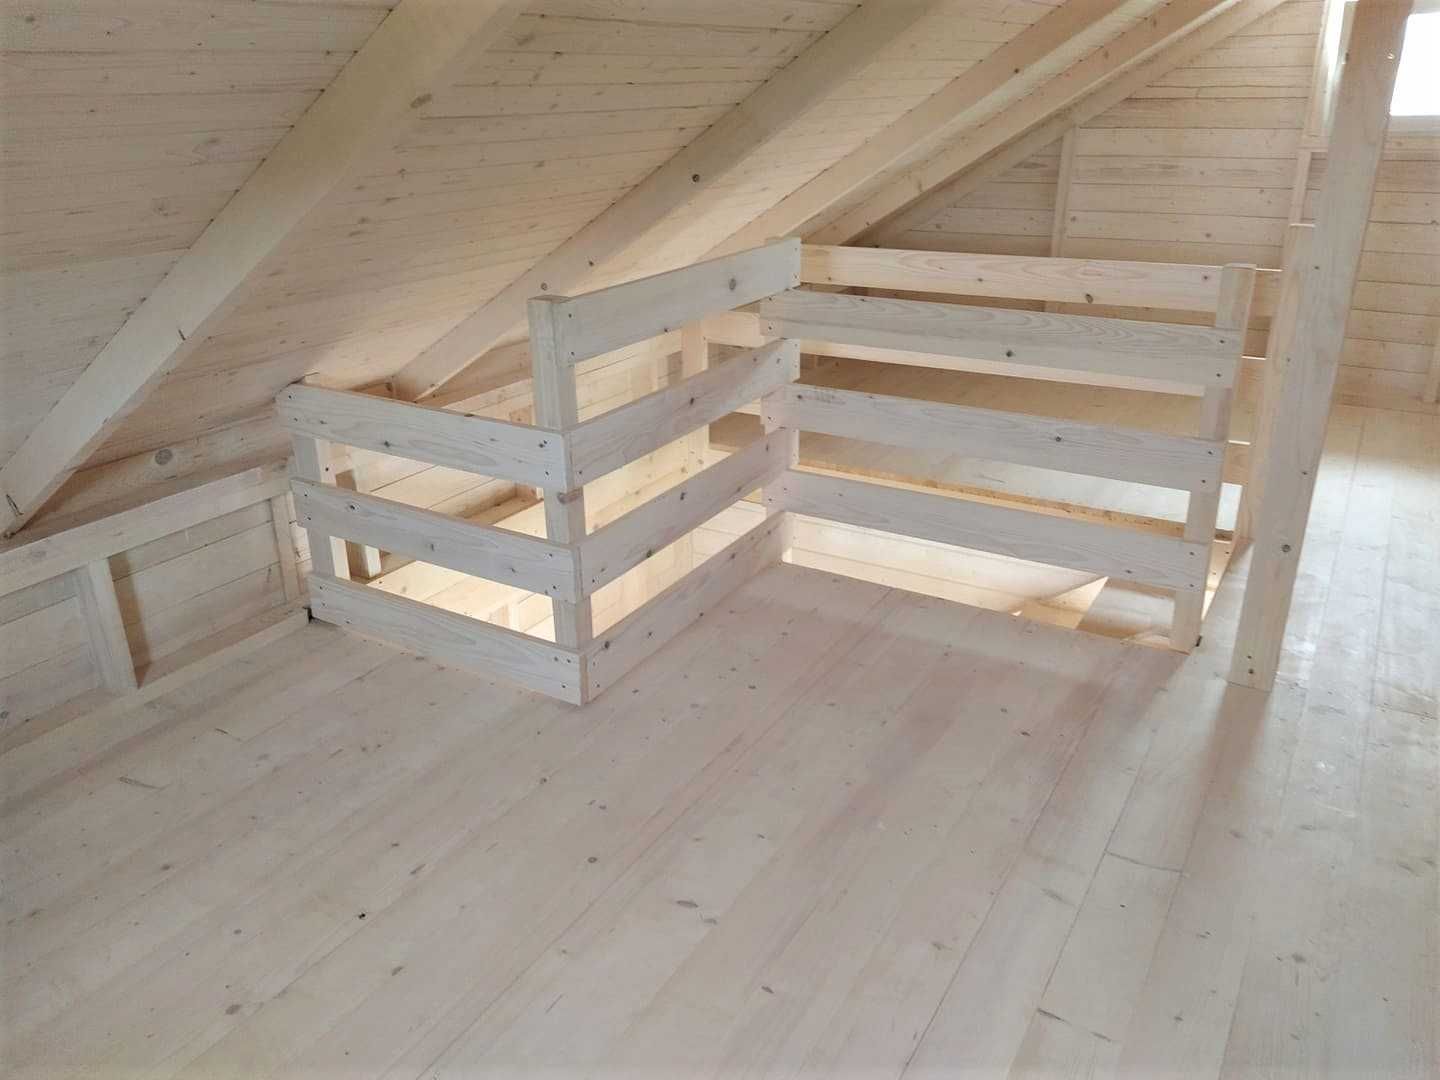 Drewniany domek 35m^2 z poddaszem, blacha, drewniane schody